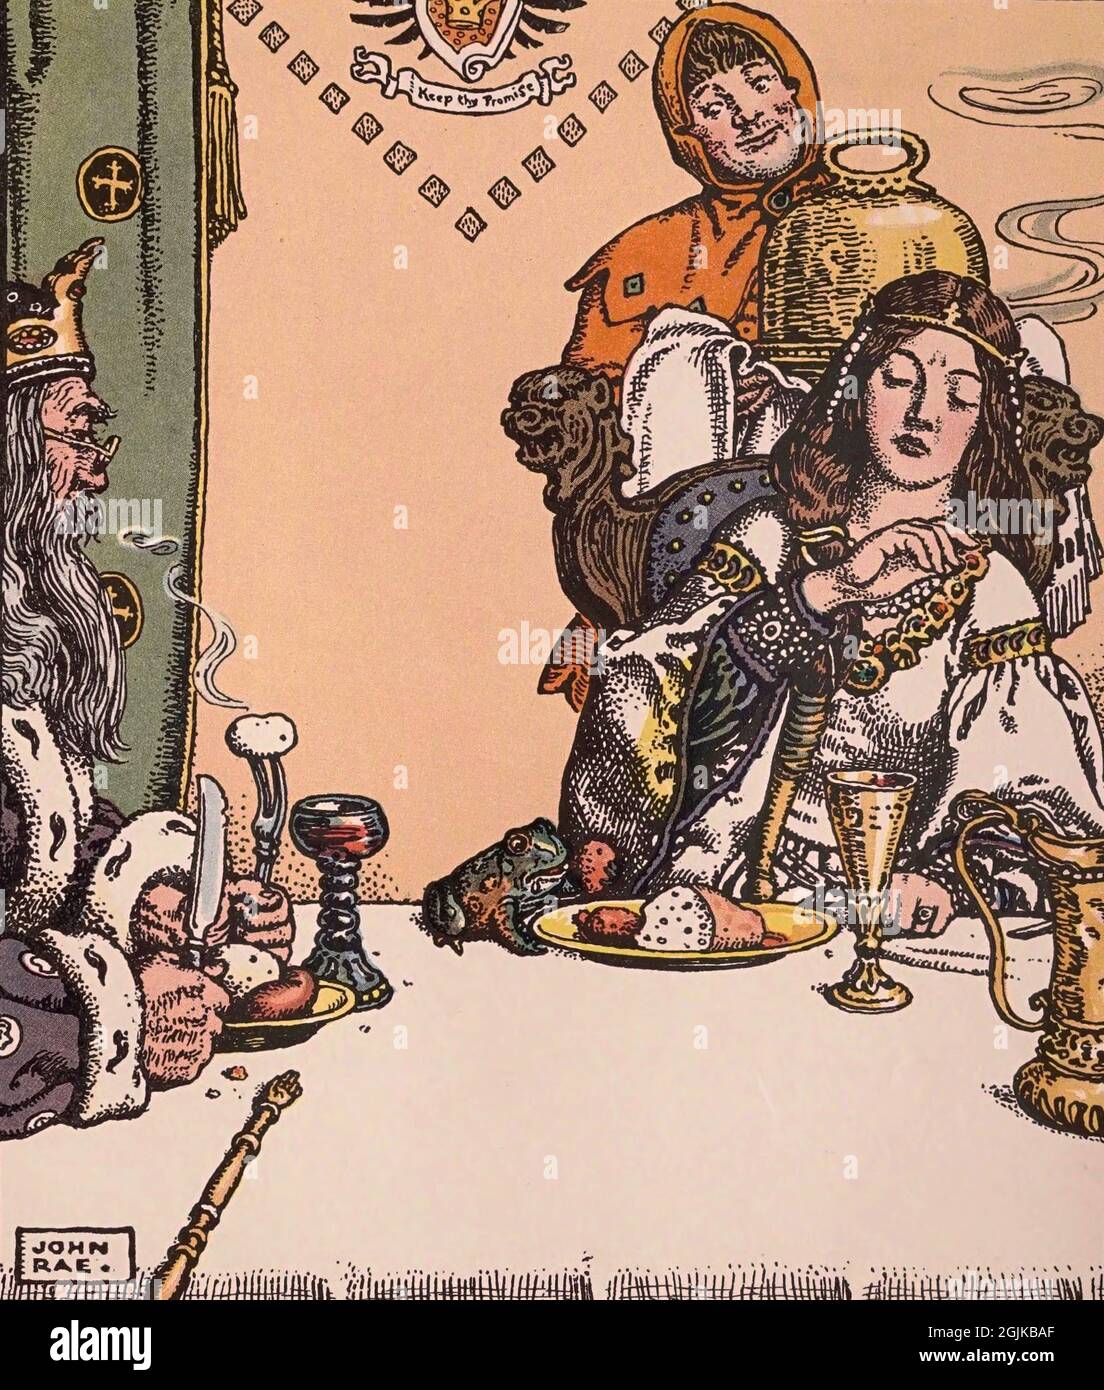 Ilustración del libro cuentos de animales de Grimm - la fiesta de la rana royally- Foto de stock